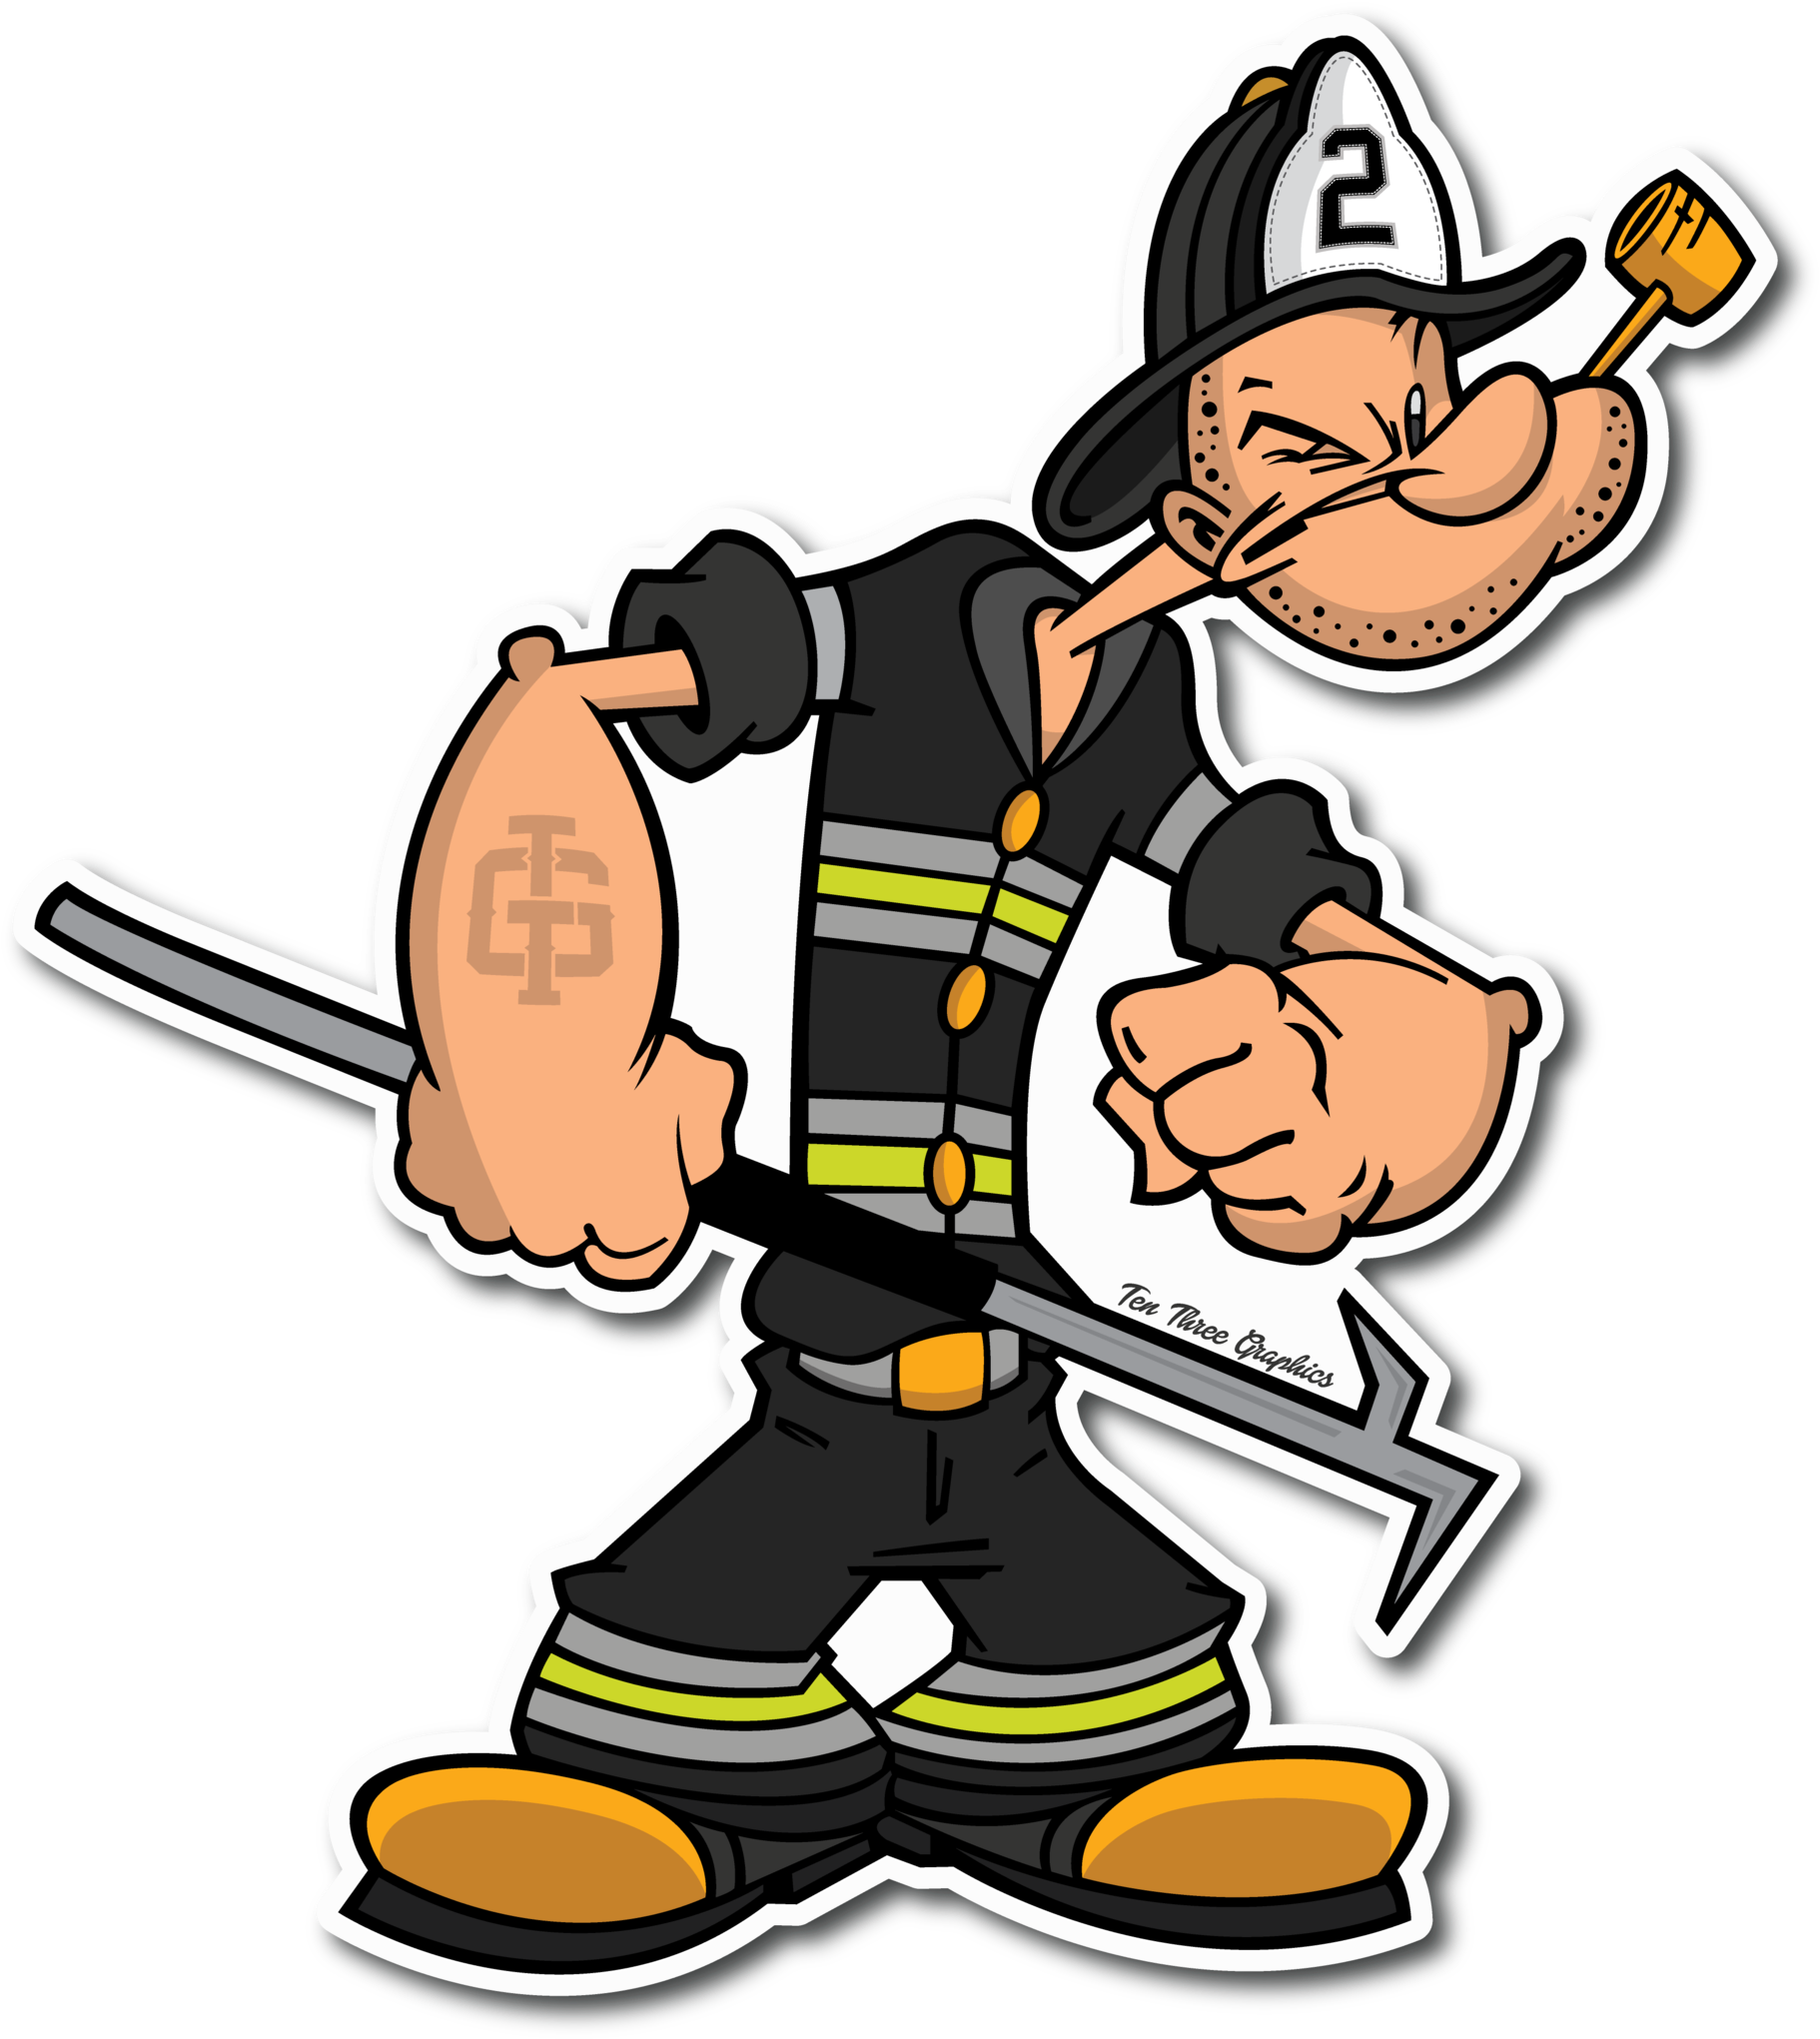 Firefighter Fire Department T-shirt Firefighting Fire - Popeye Firefighter (1831x2048)